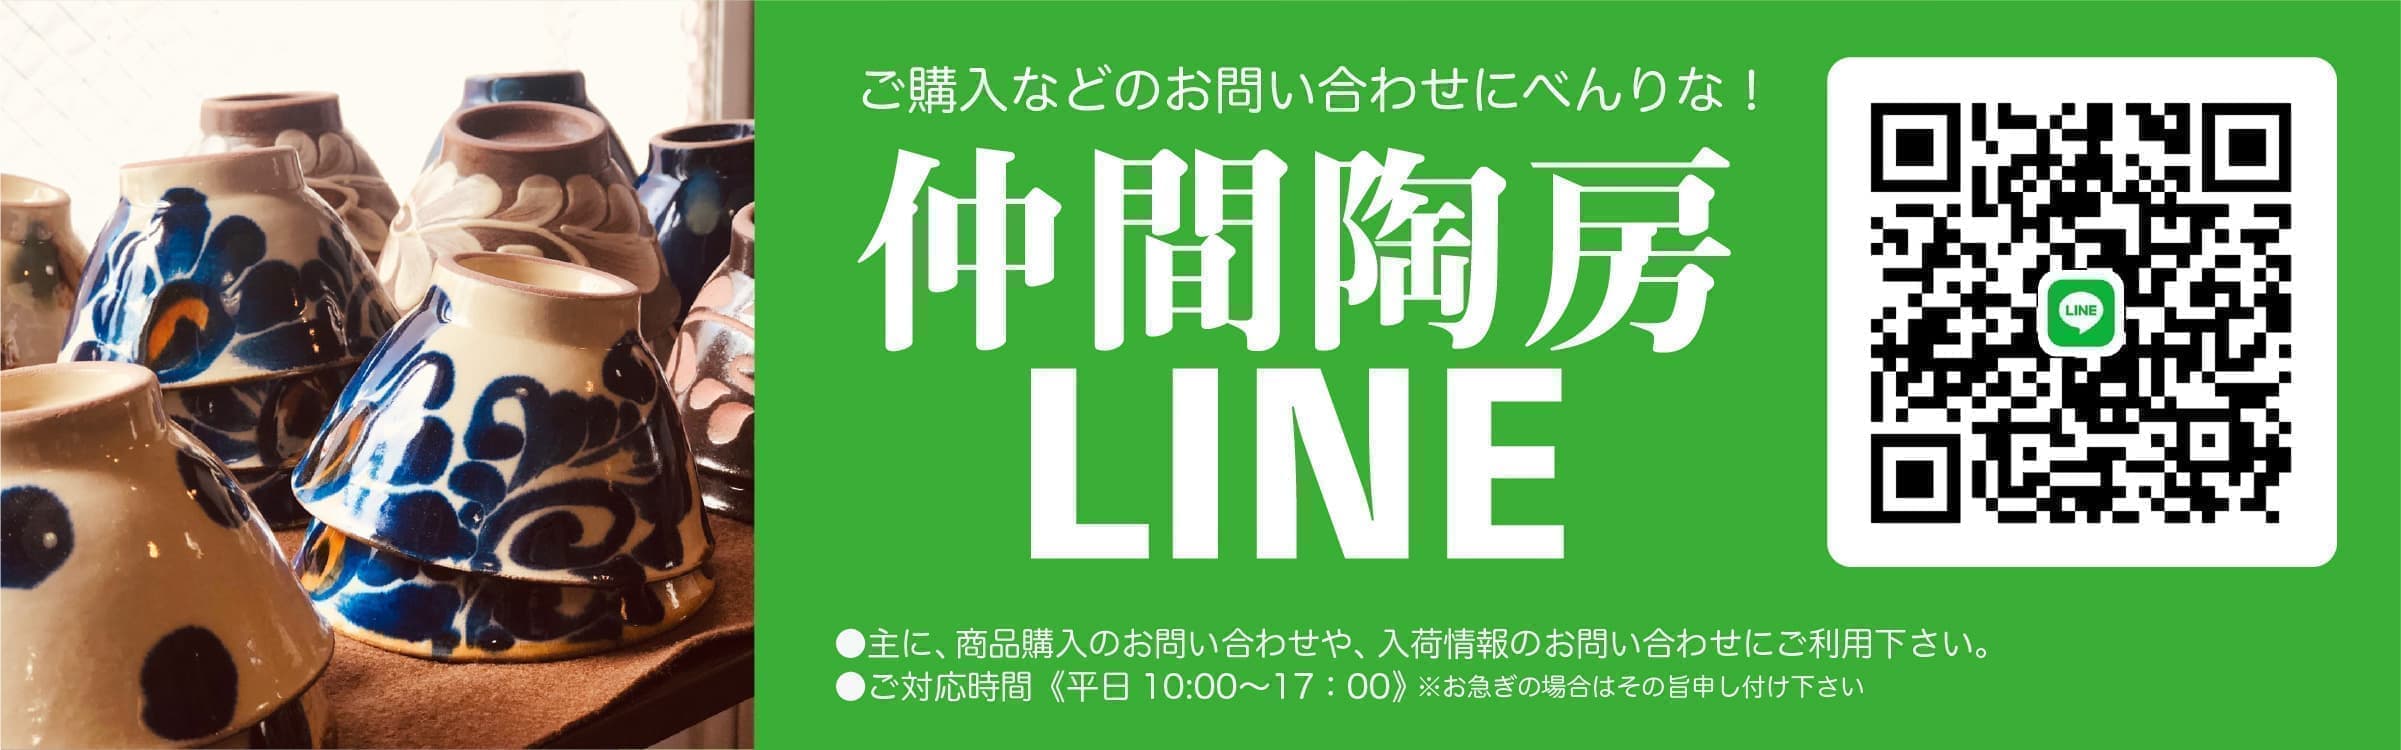 仲間陶房LINE